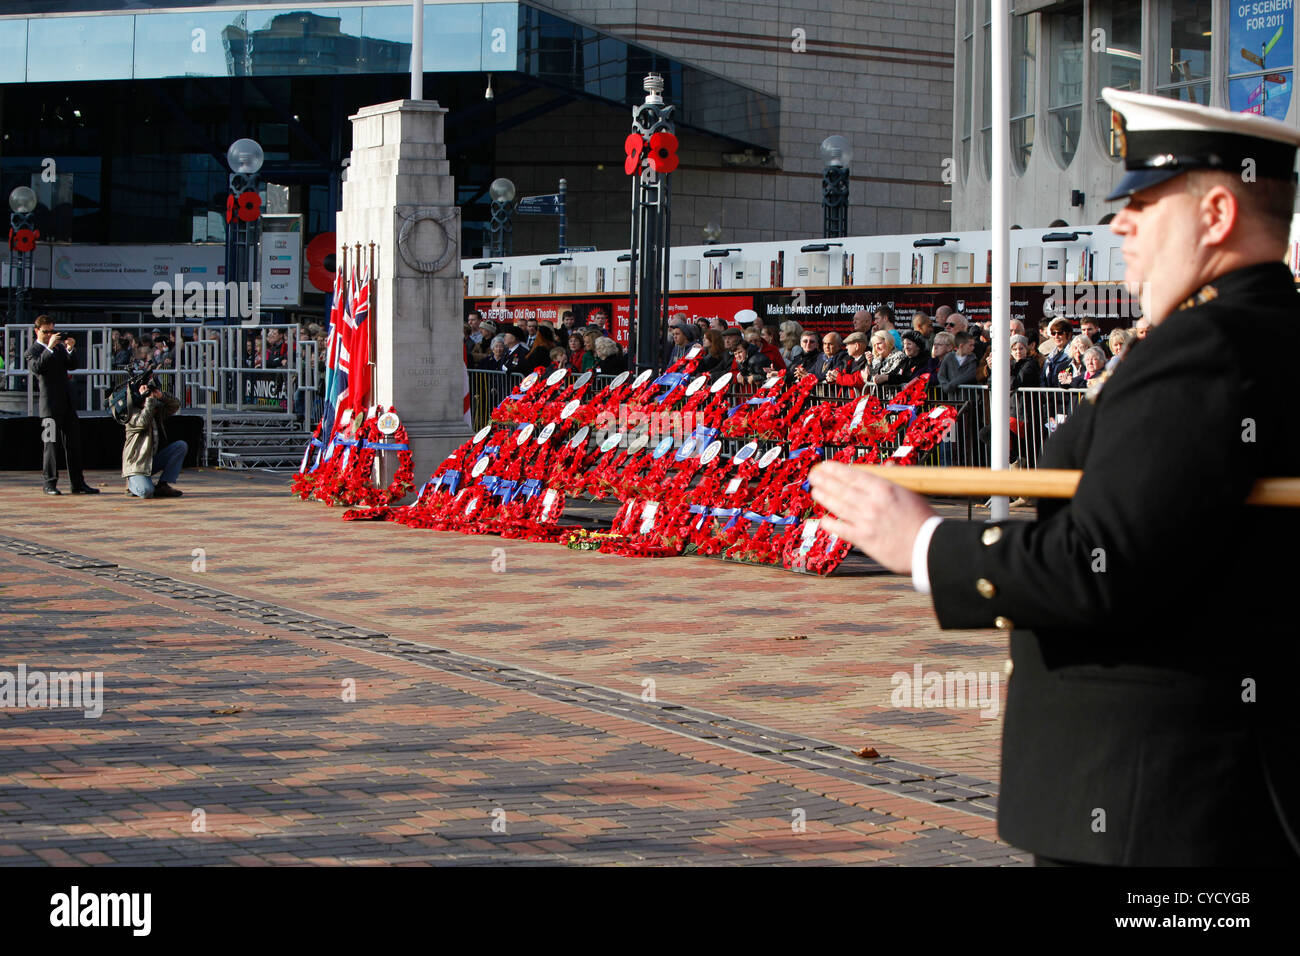 Massen von Mohn Kränze im Stadtzentrum von Birmingham. Mit einer königlichen Marine-Offizier im Vordergrund. Stockfoto